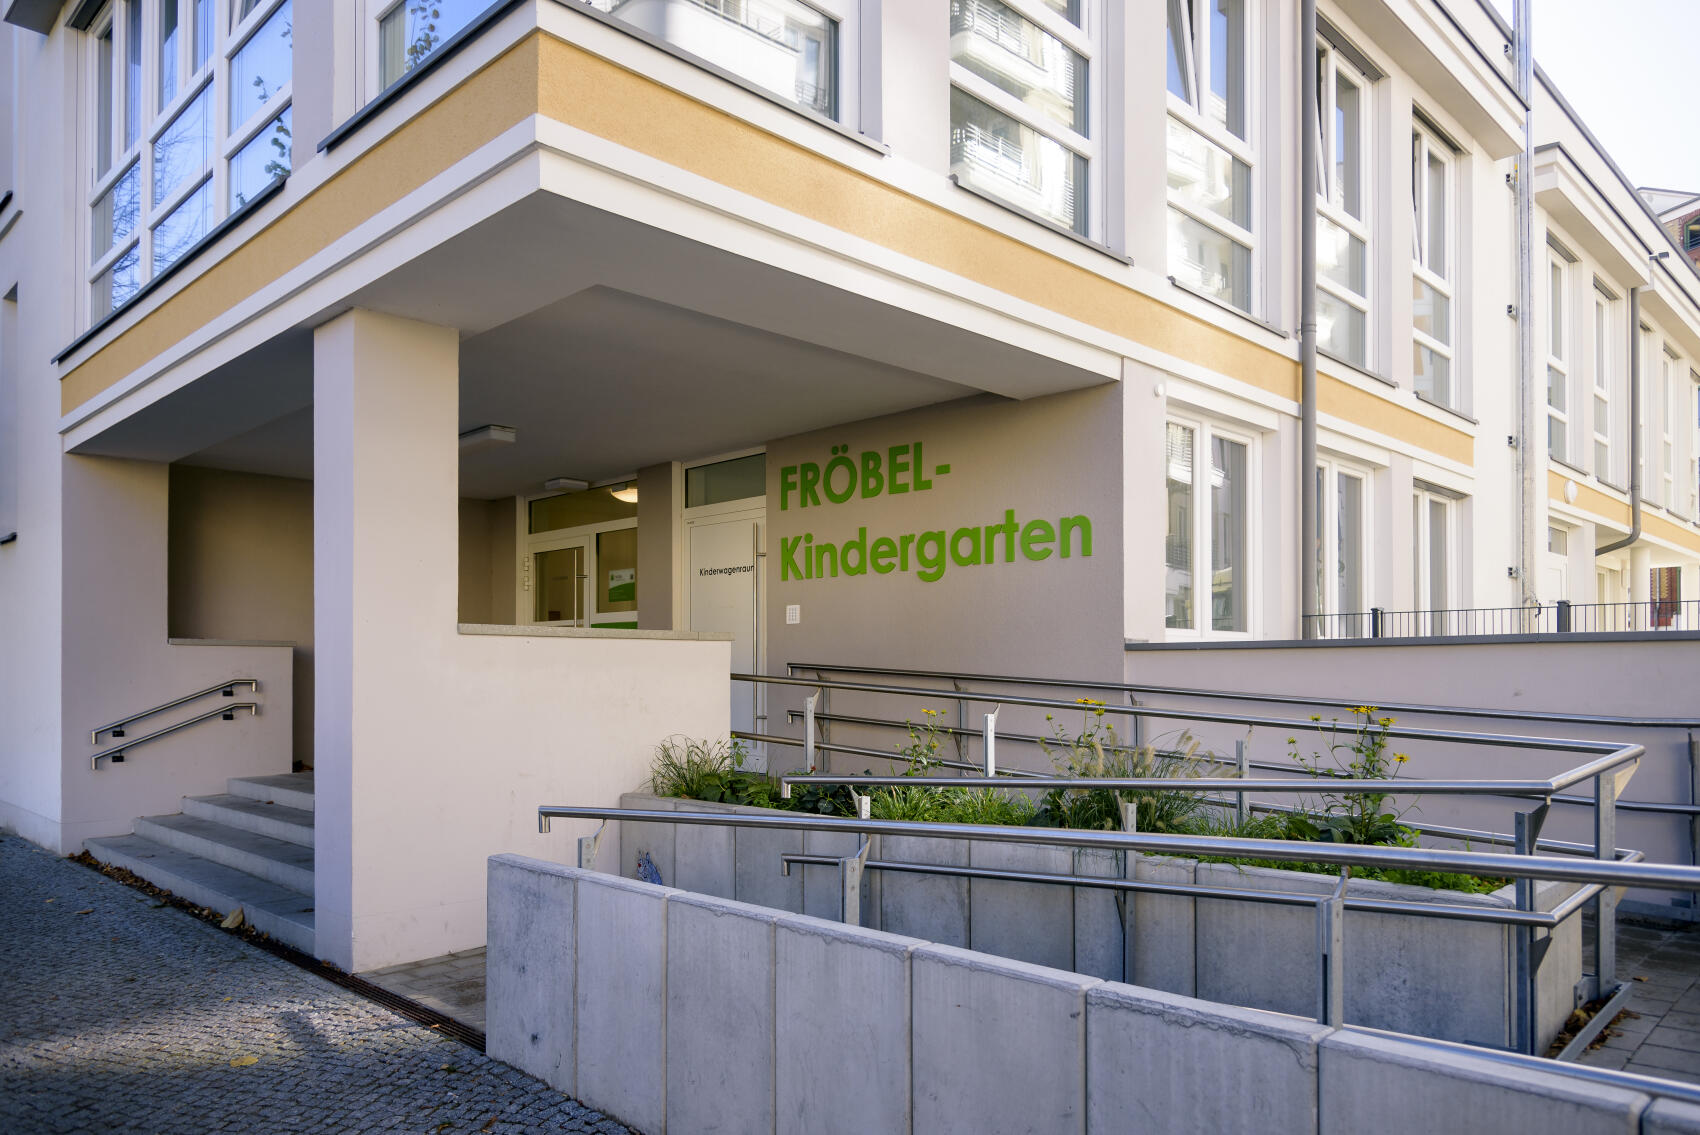 Bild 5 Fröbel-Kindergarten Freudenberg in Berlin